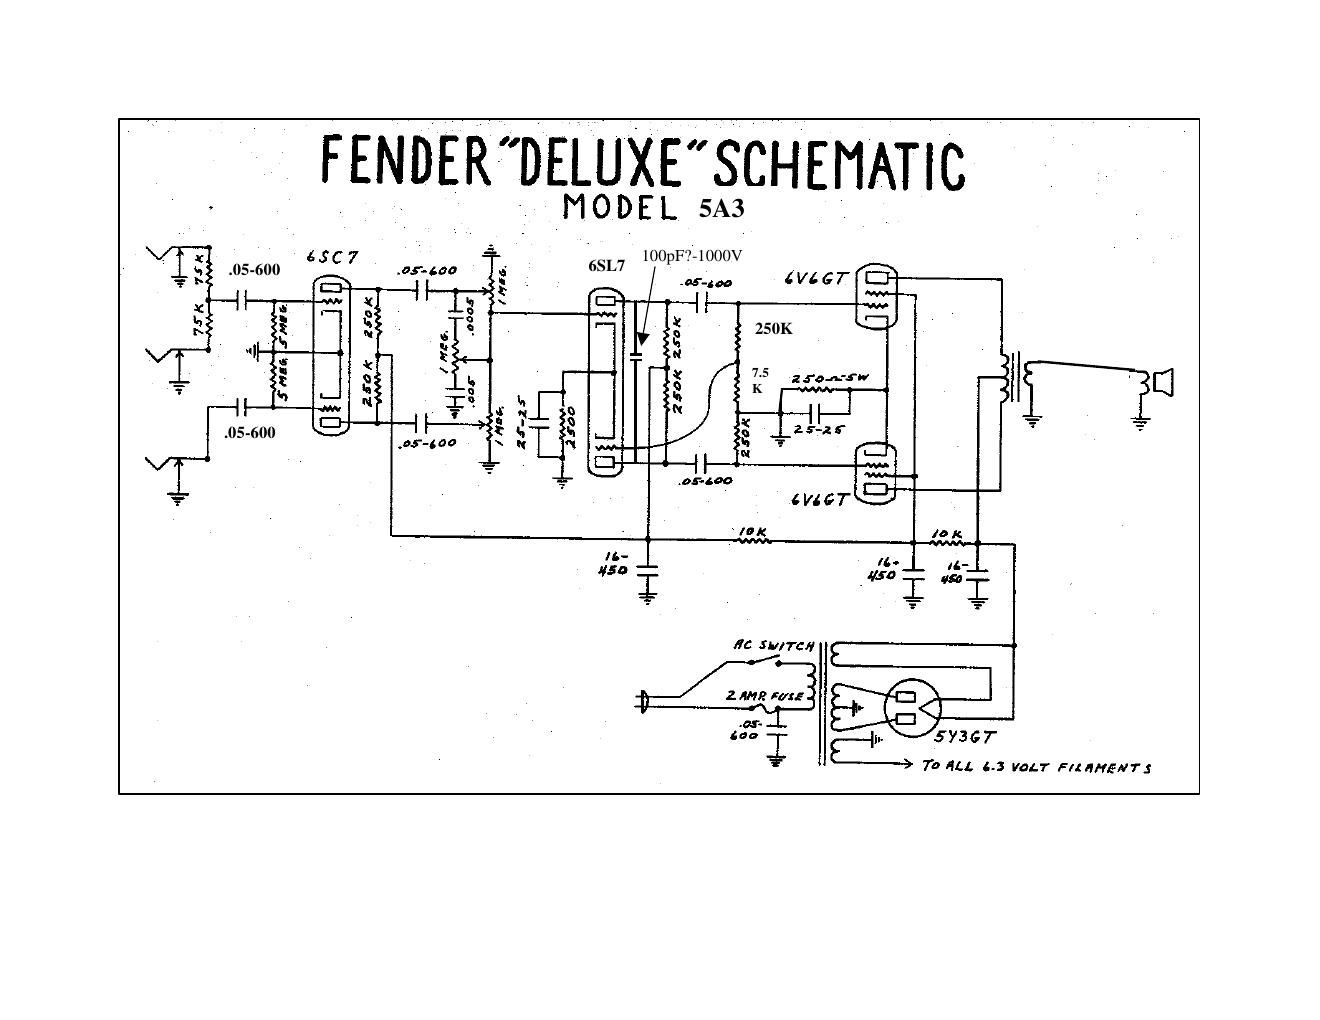 fender deluxe 5a3 schematic